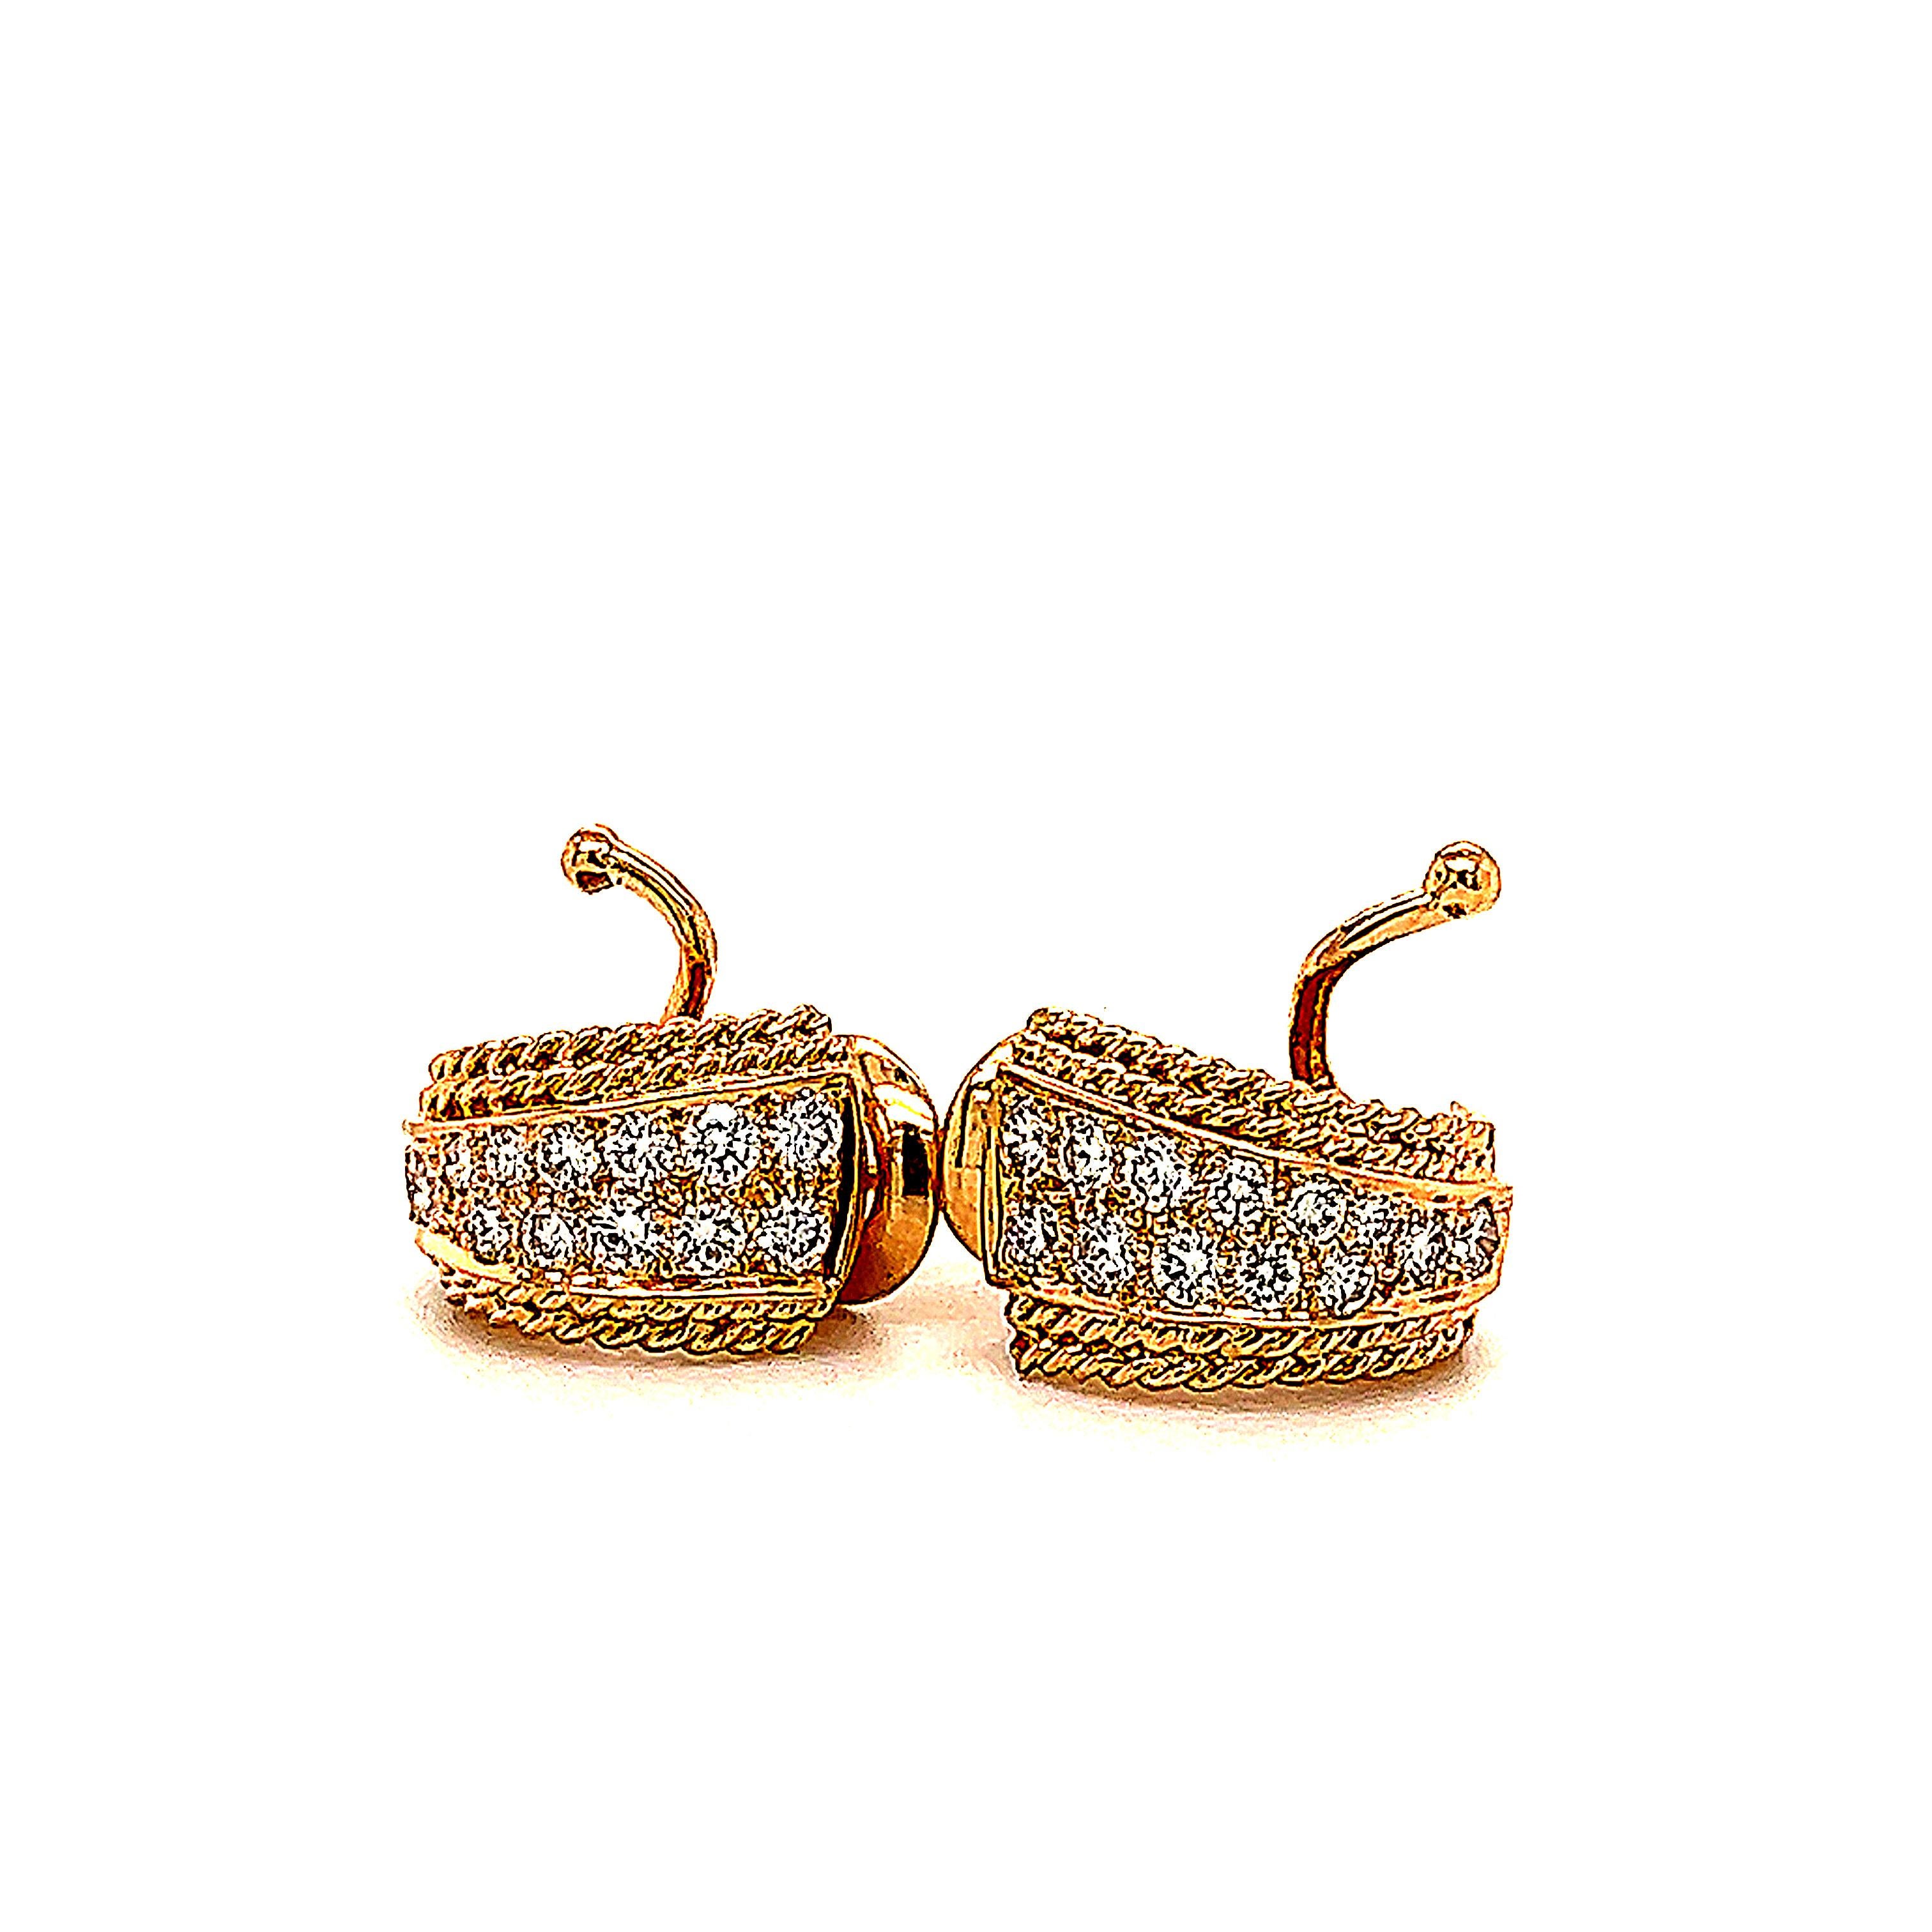 Round Cut Van Cleef & Arpels Diamond Huggie Earrings 18k Yellow Gold